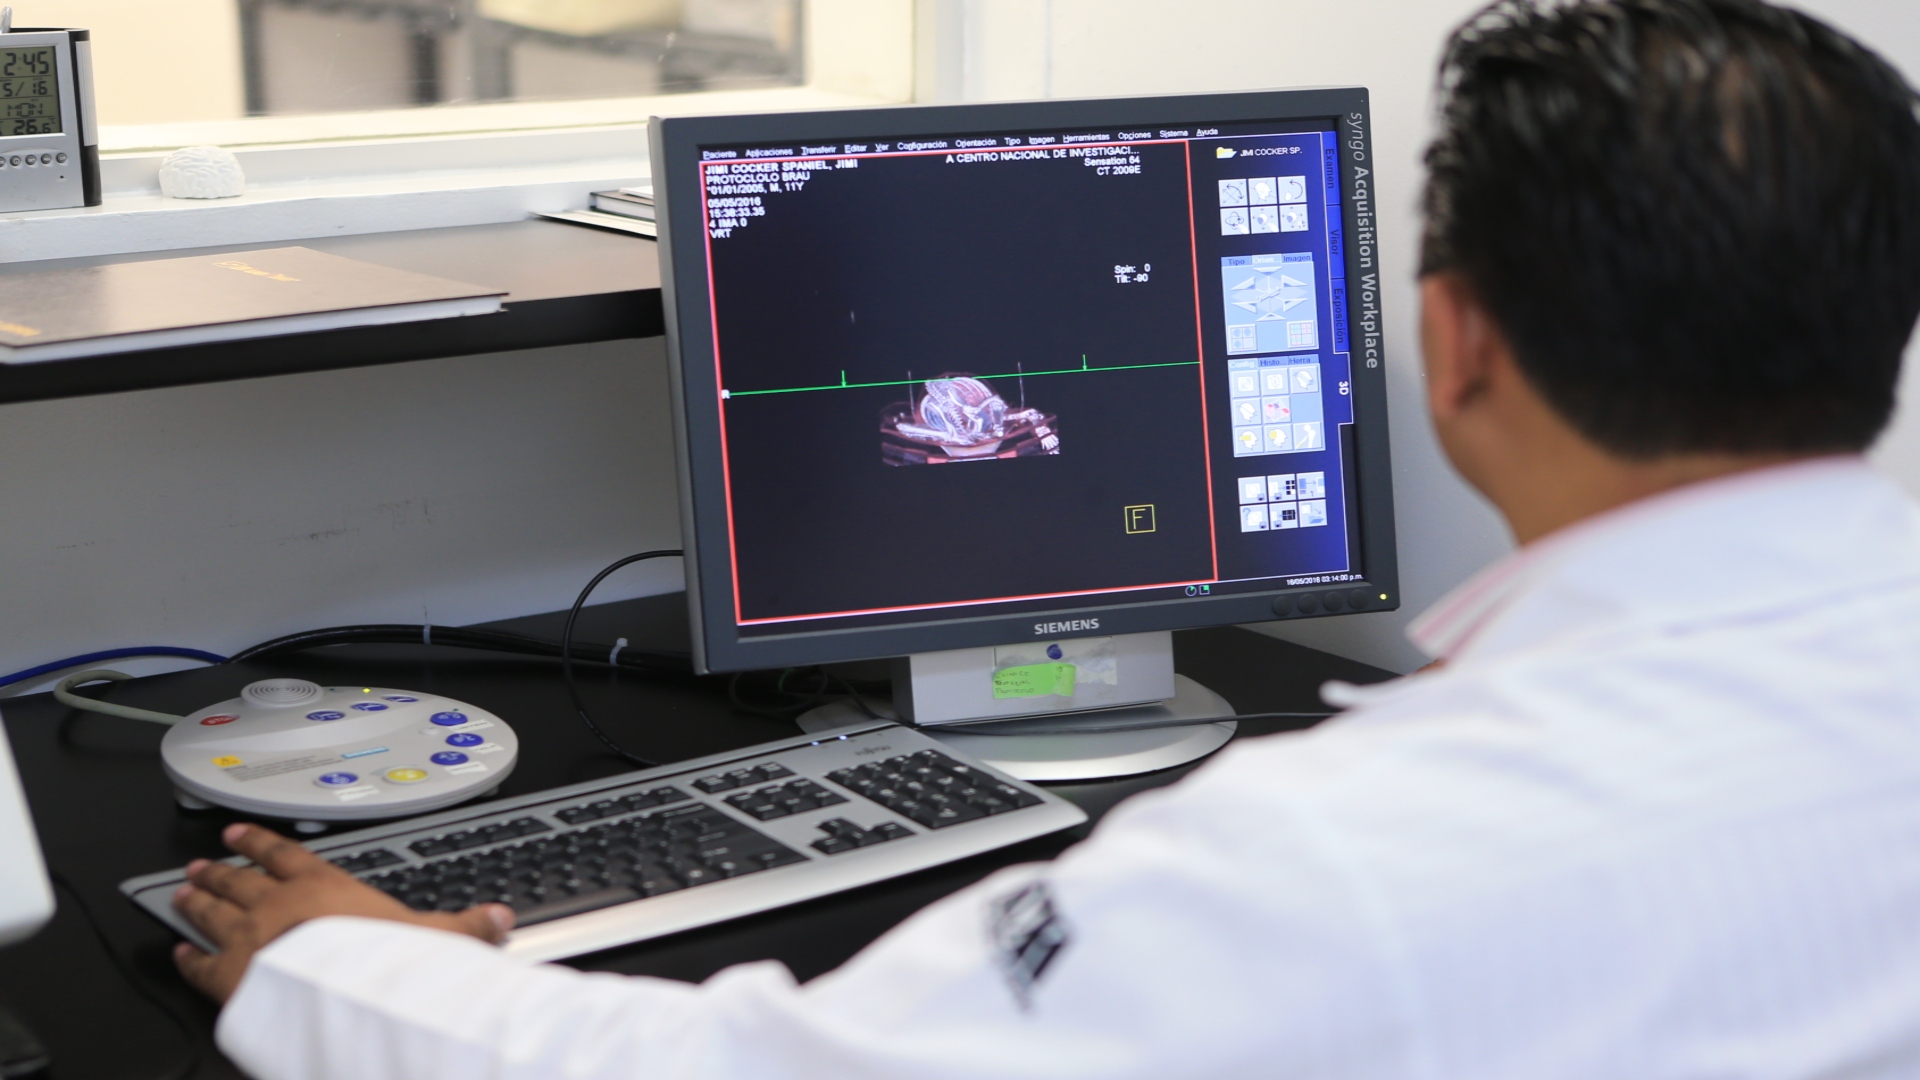 Los neurólogos están entre los trabajos con menor riesgo de automatización (Foto: Cortesía UAM Azcapotzalco)